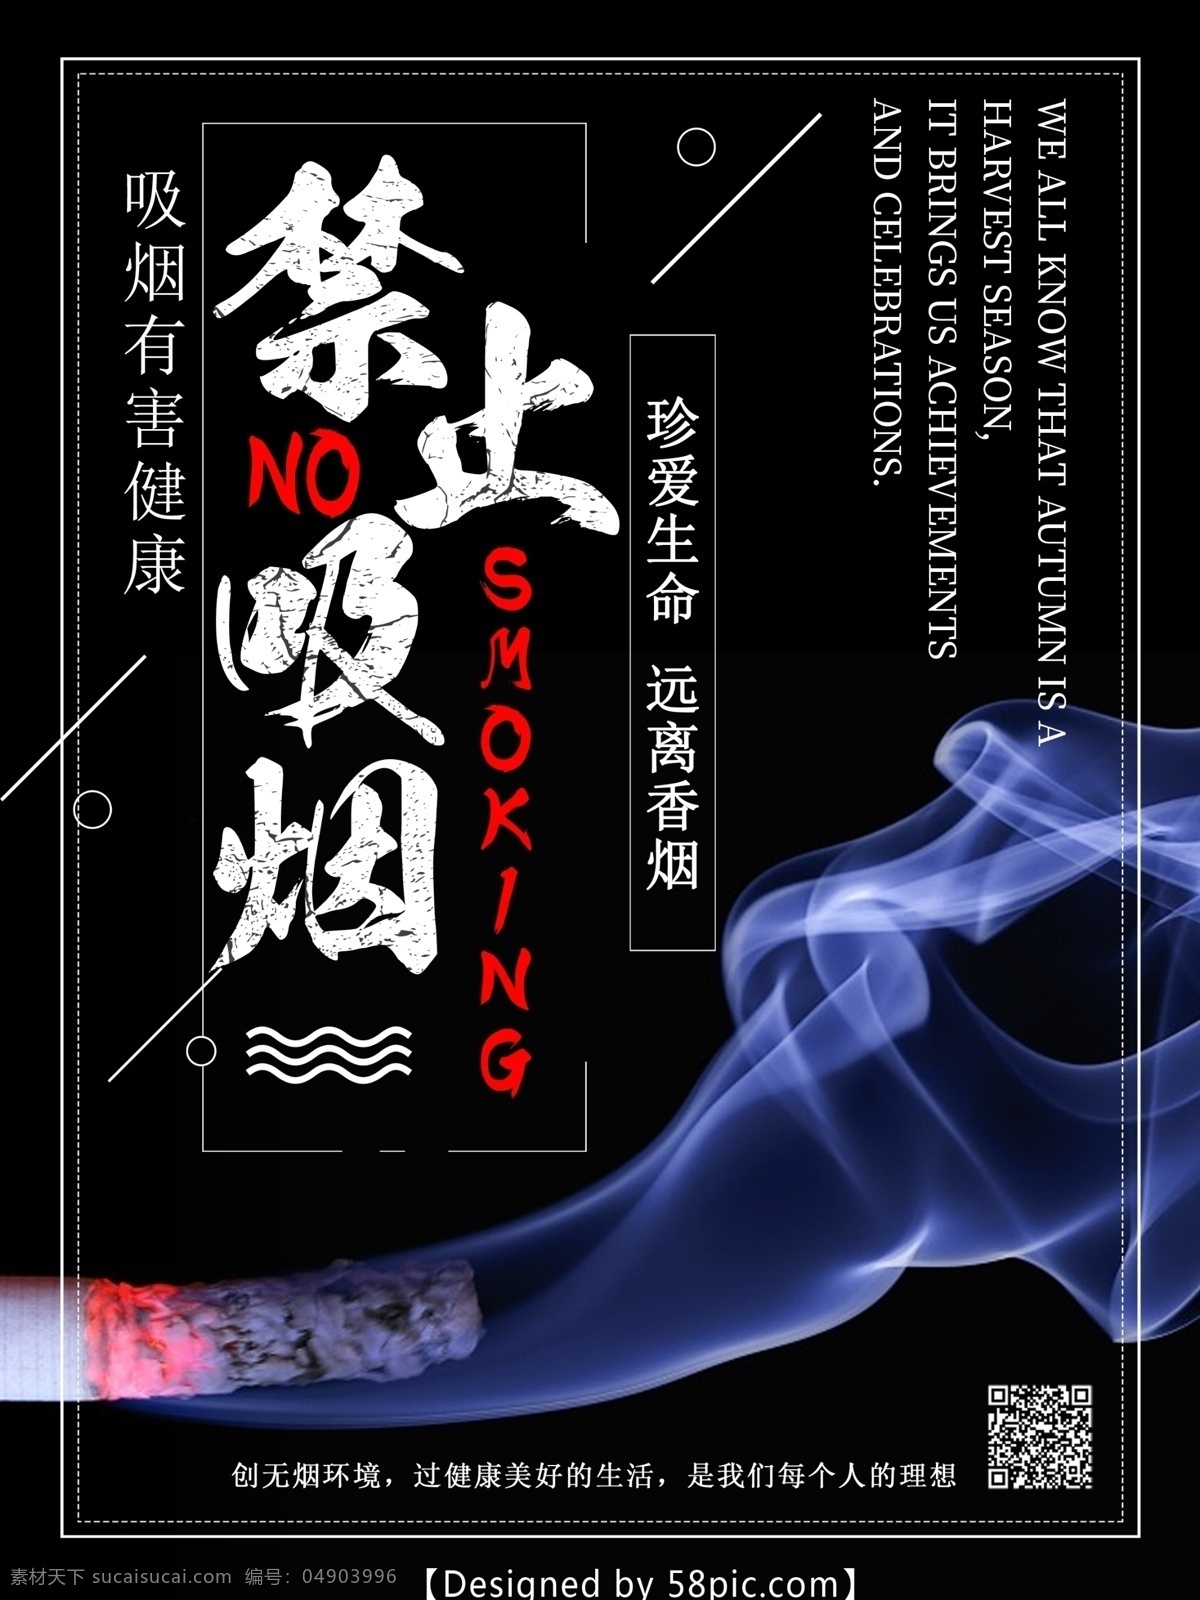 禁止 吸烟 远离 香烟 海报 禁止吸烟 吸烟有害健康 戒烟 公益海报 禁烟 禁止吸烟海报 吸烟素材 无烟日 无烟 禁止抽烟 无烟日海报 无烟日素材 无烟背景